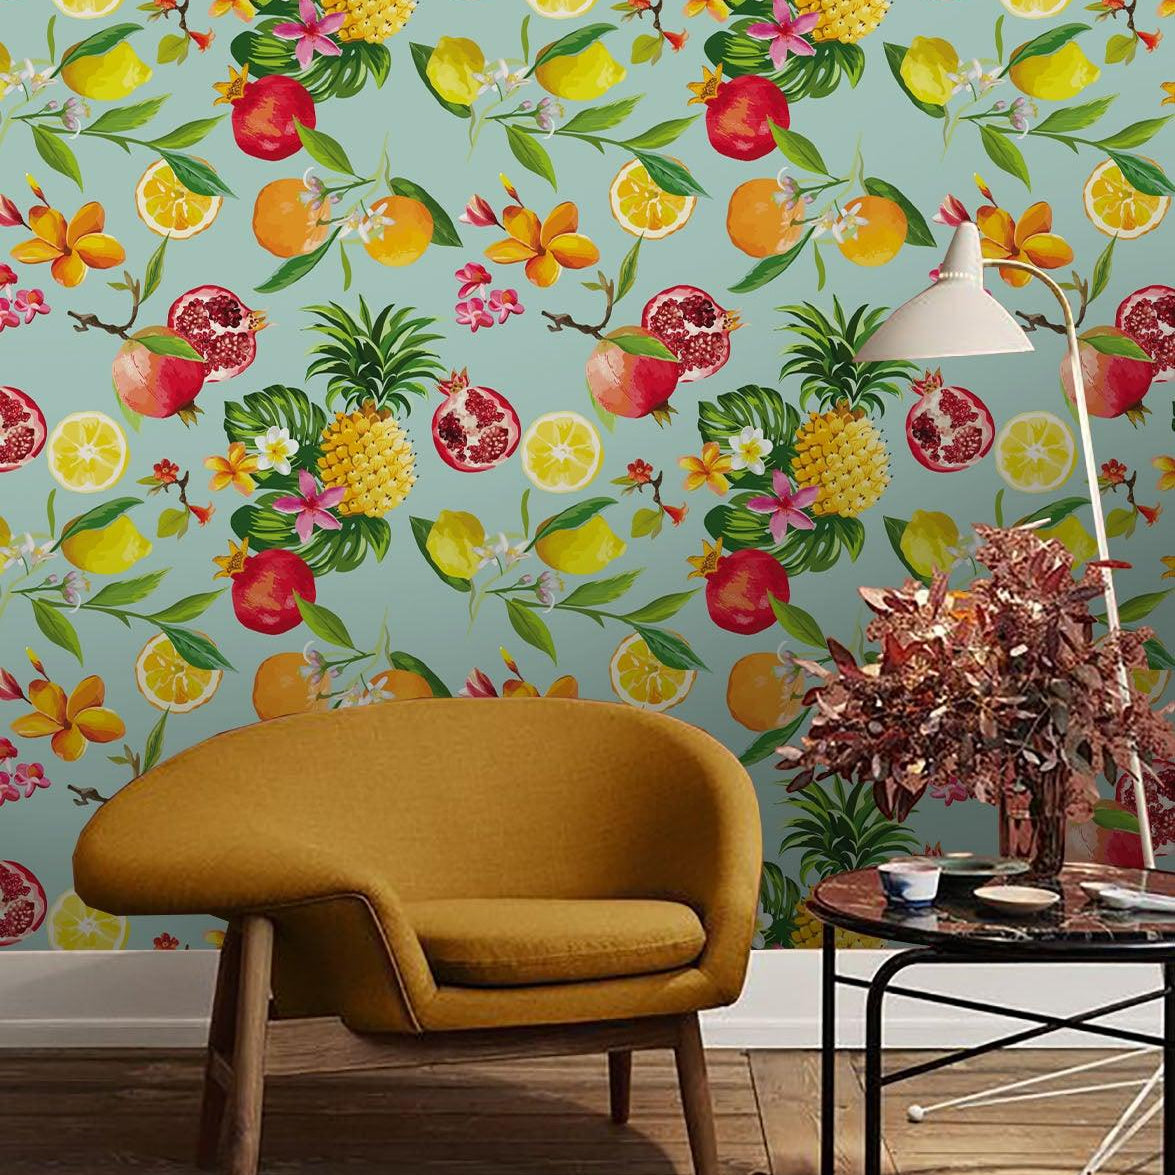 3D Fresh Fruit Wall Mural Wallpaper 155- Jess Art Decoration